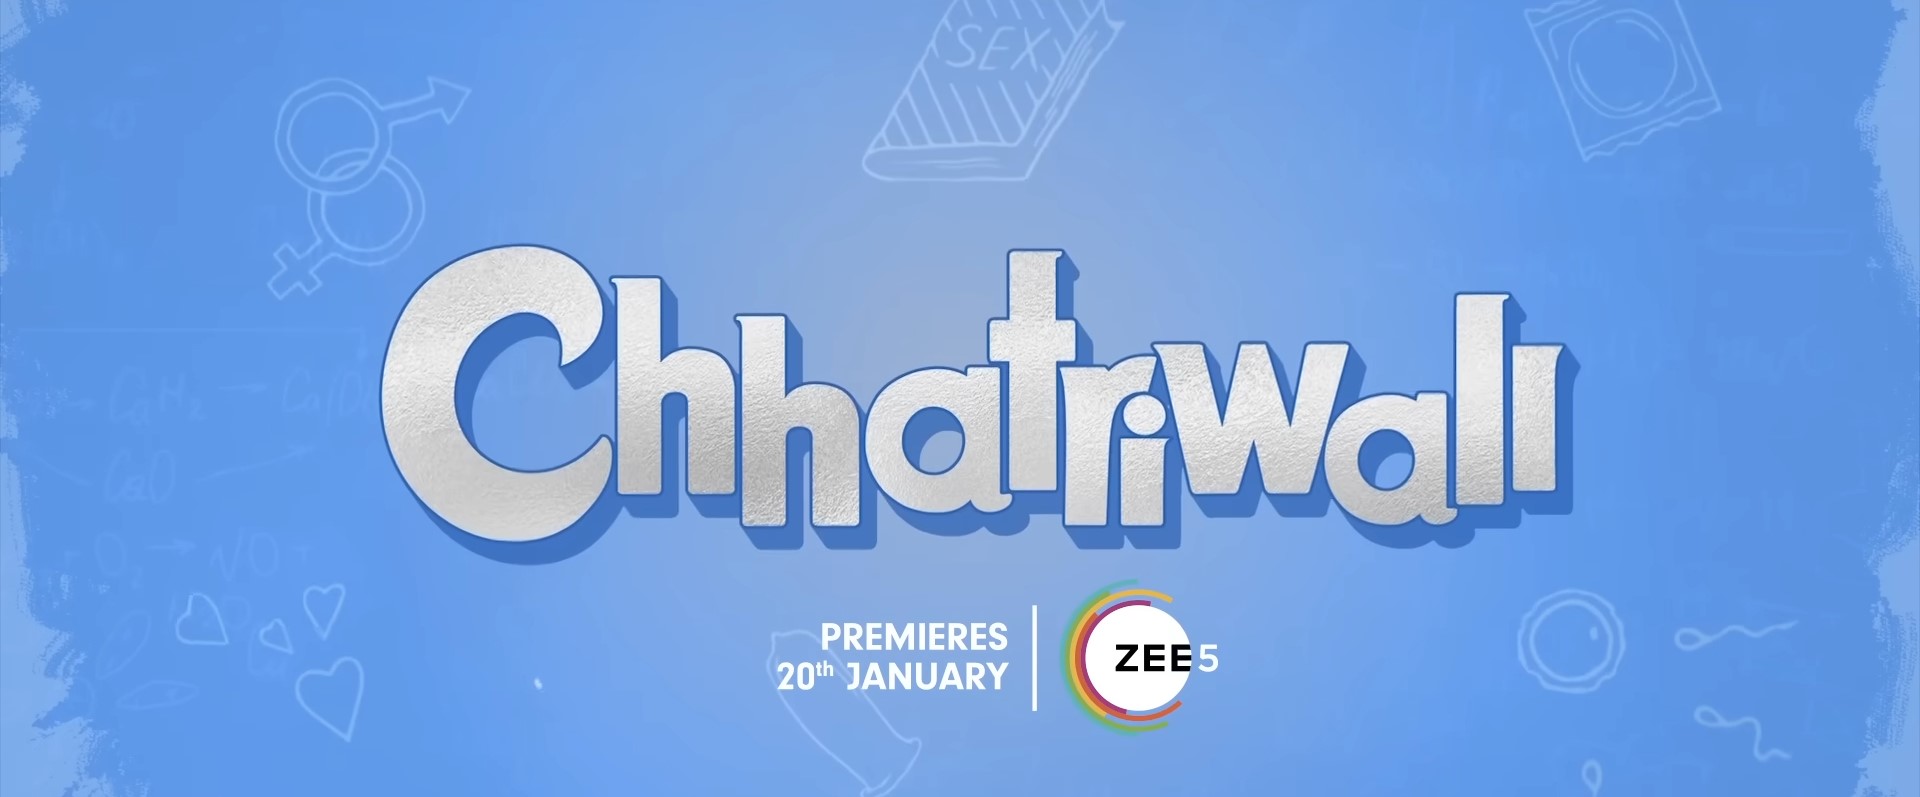 Chhatriwali